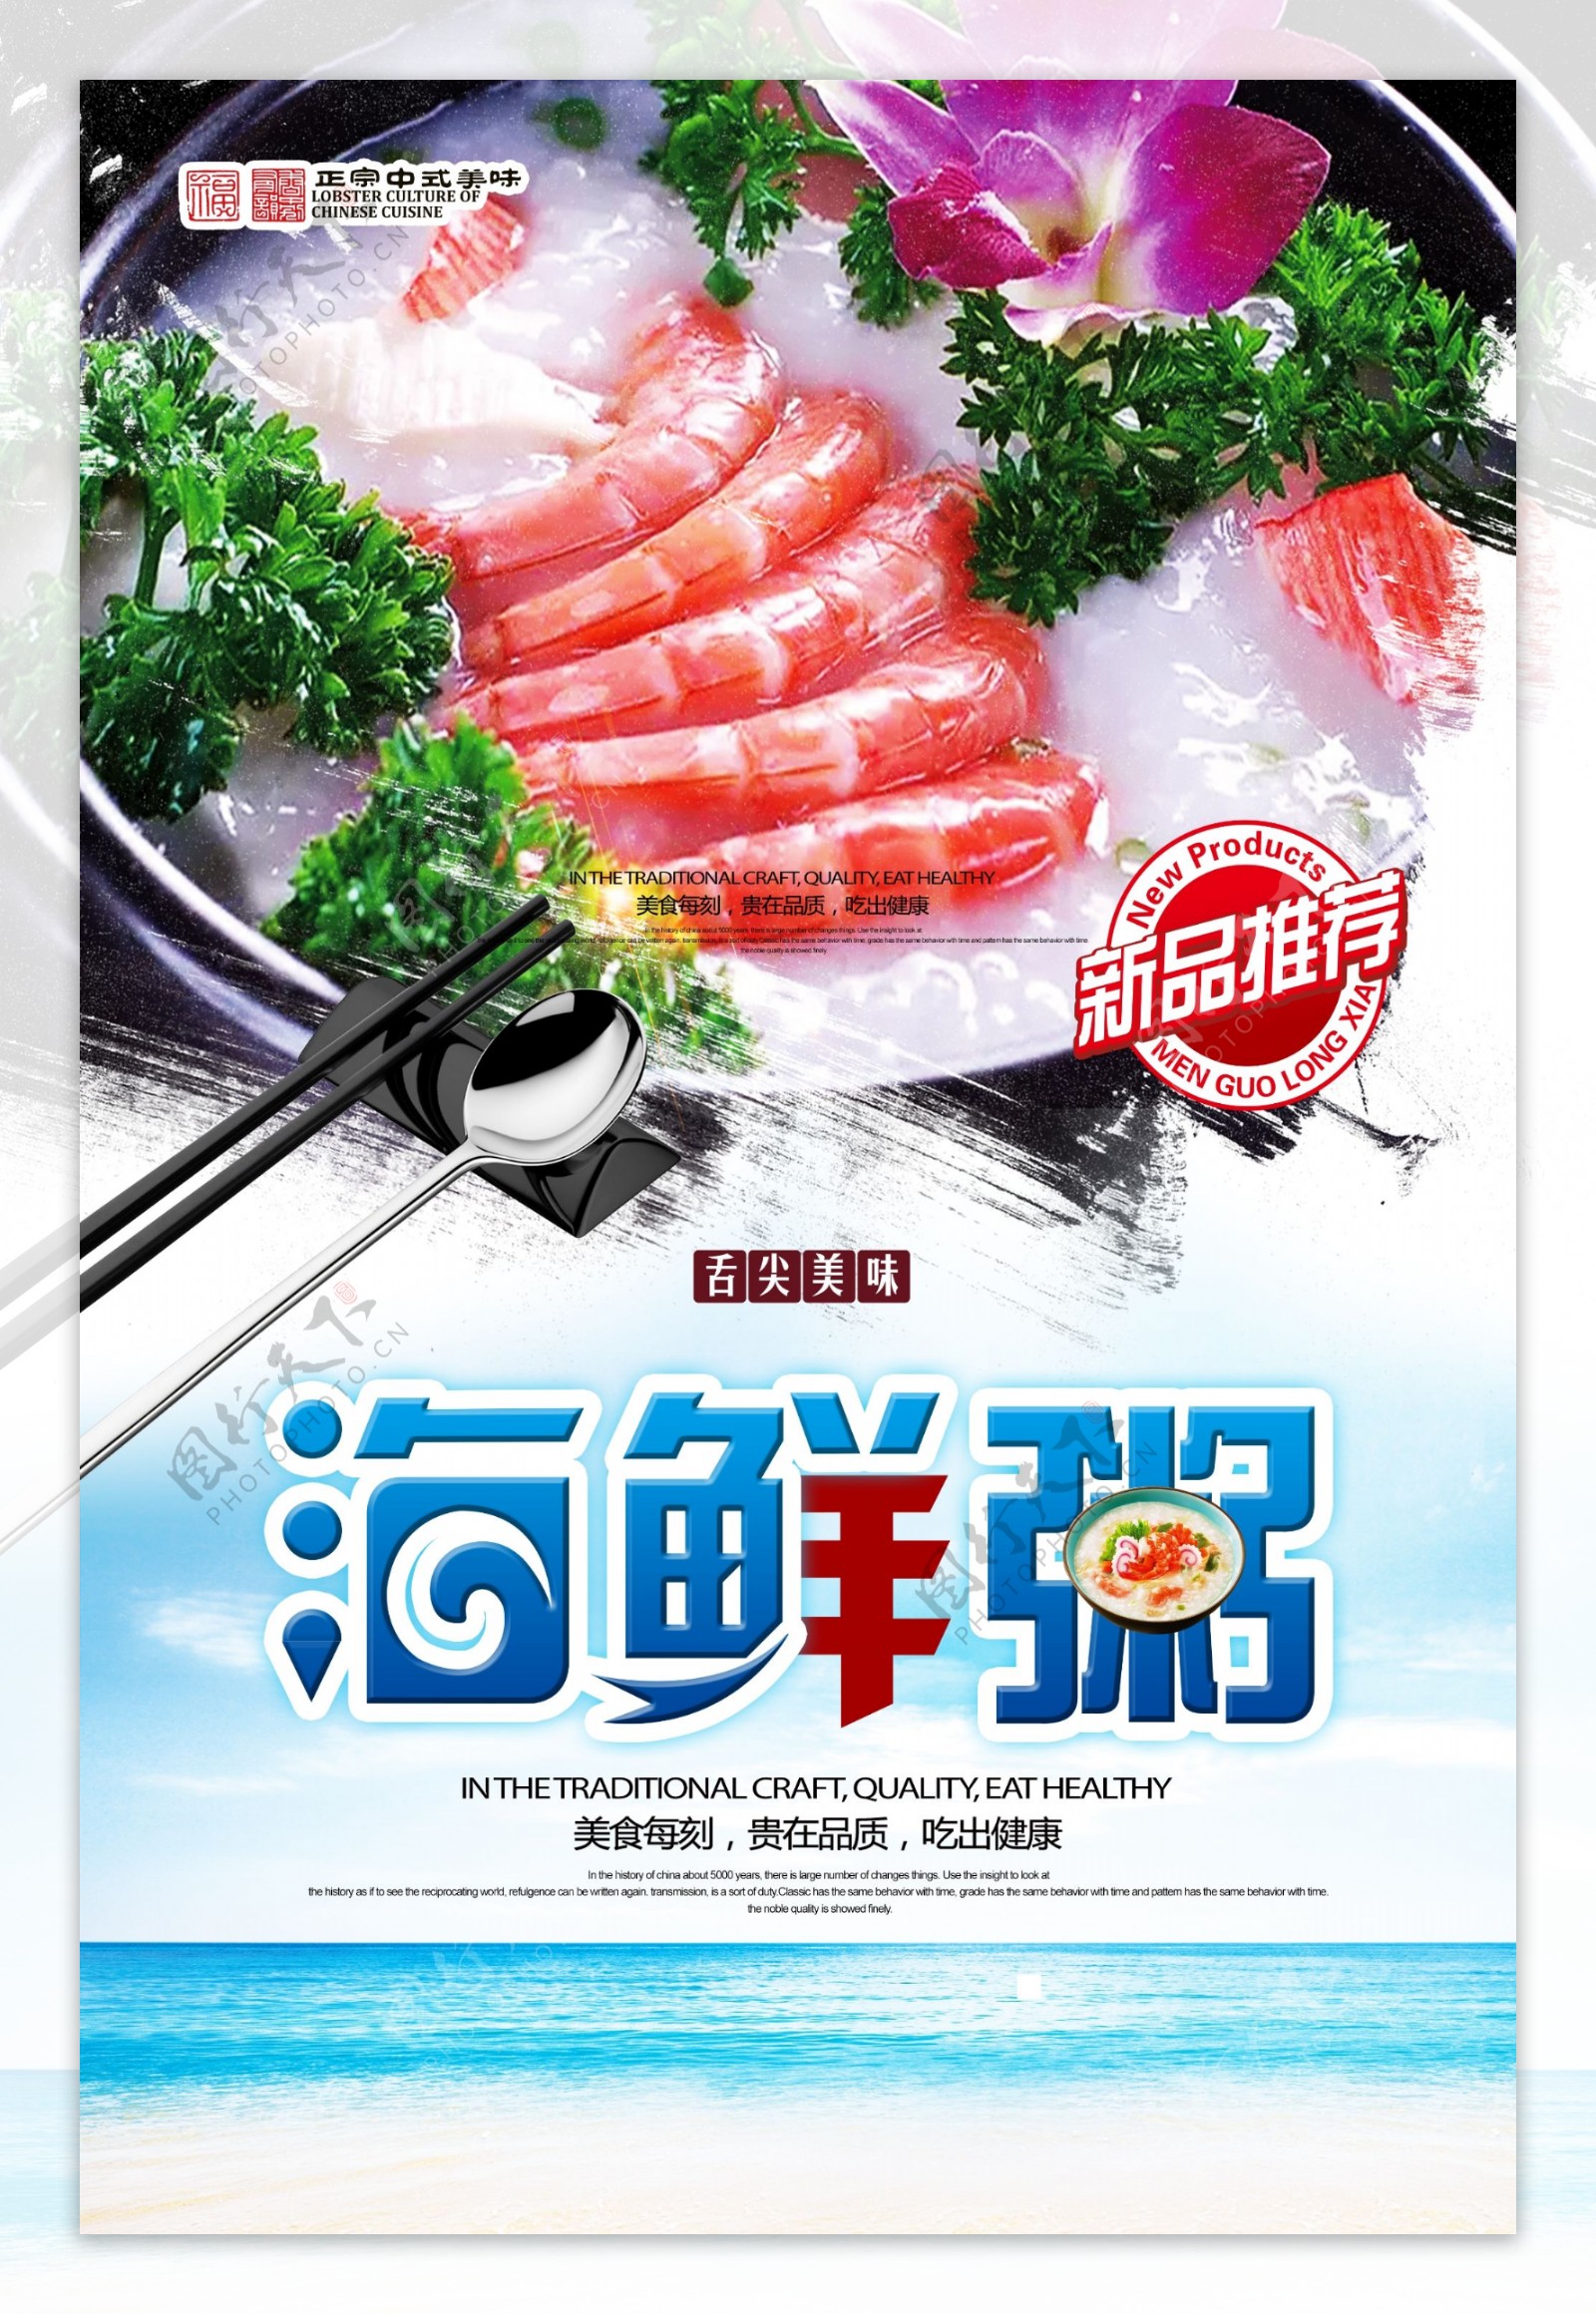 海鲜粥美食创意宣传海报设计模版拷贝.psd